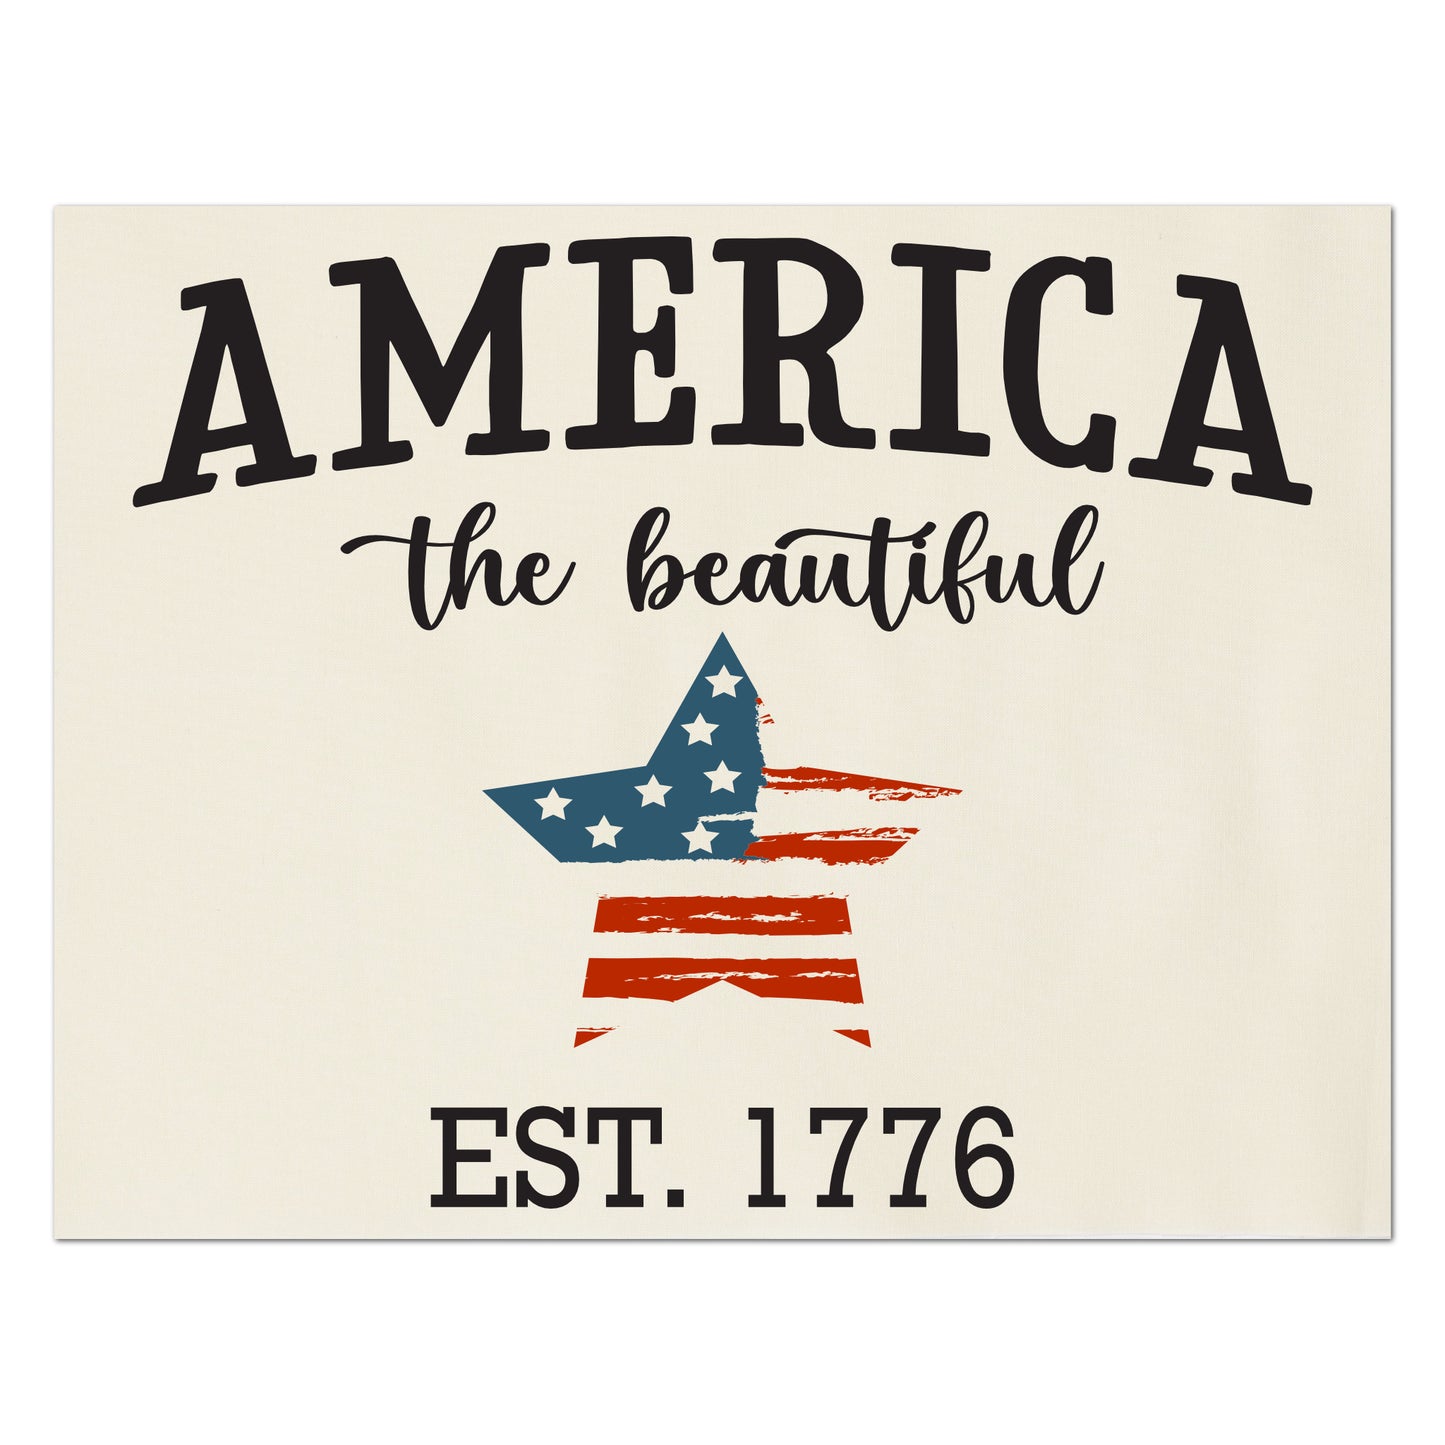 Americana Fabric, Patriotic Quilt - America the Beautiful, EST. 1776 